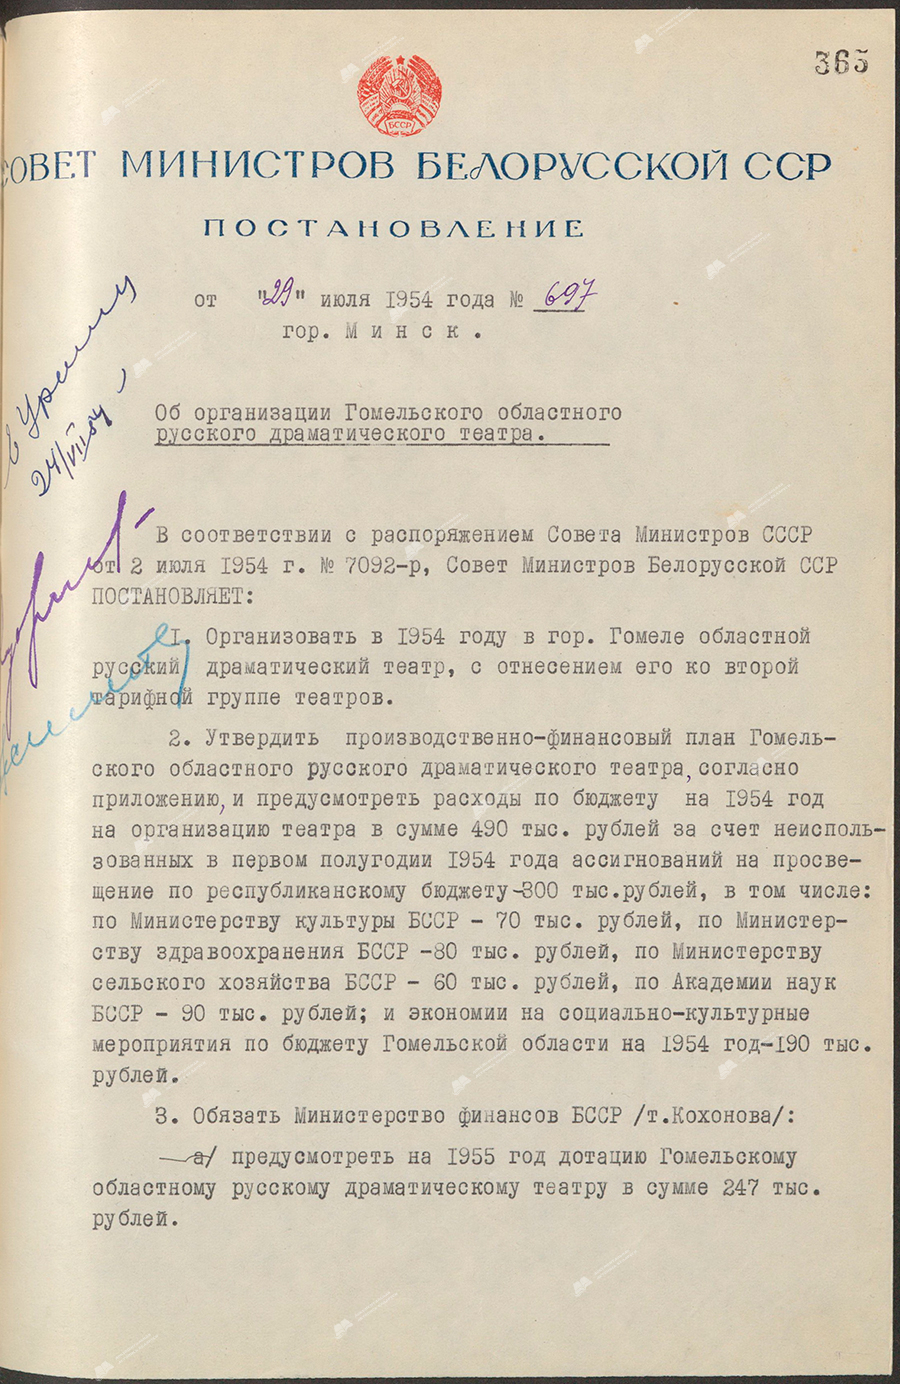 Beschluss Nr. 697 des Ministerrats der Weißrussischen SSR «Über die Organisation des regionalen russischen Dramatheaters Gomel»-с. 0